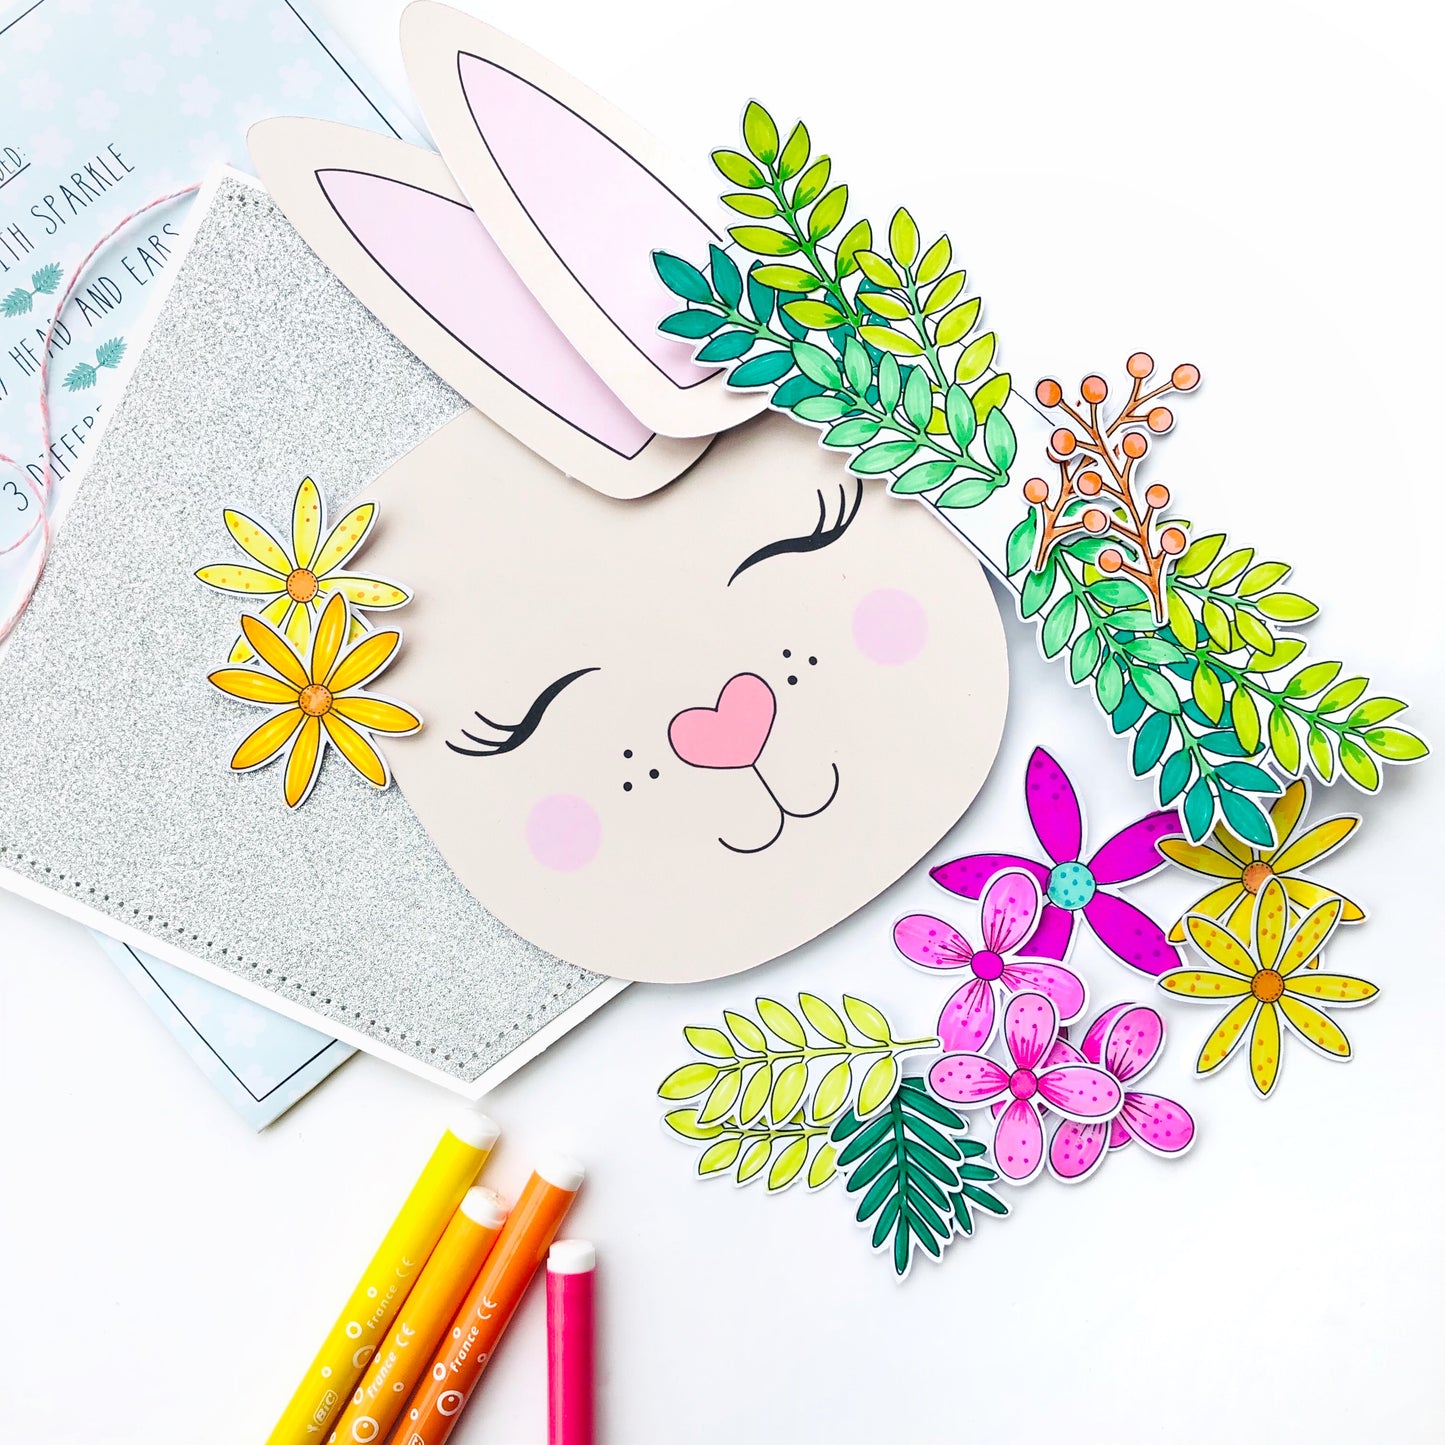 Bunny colouring craft - Loubiblu